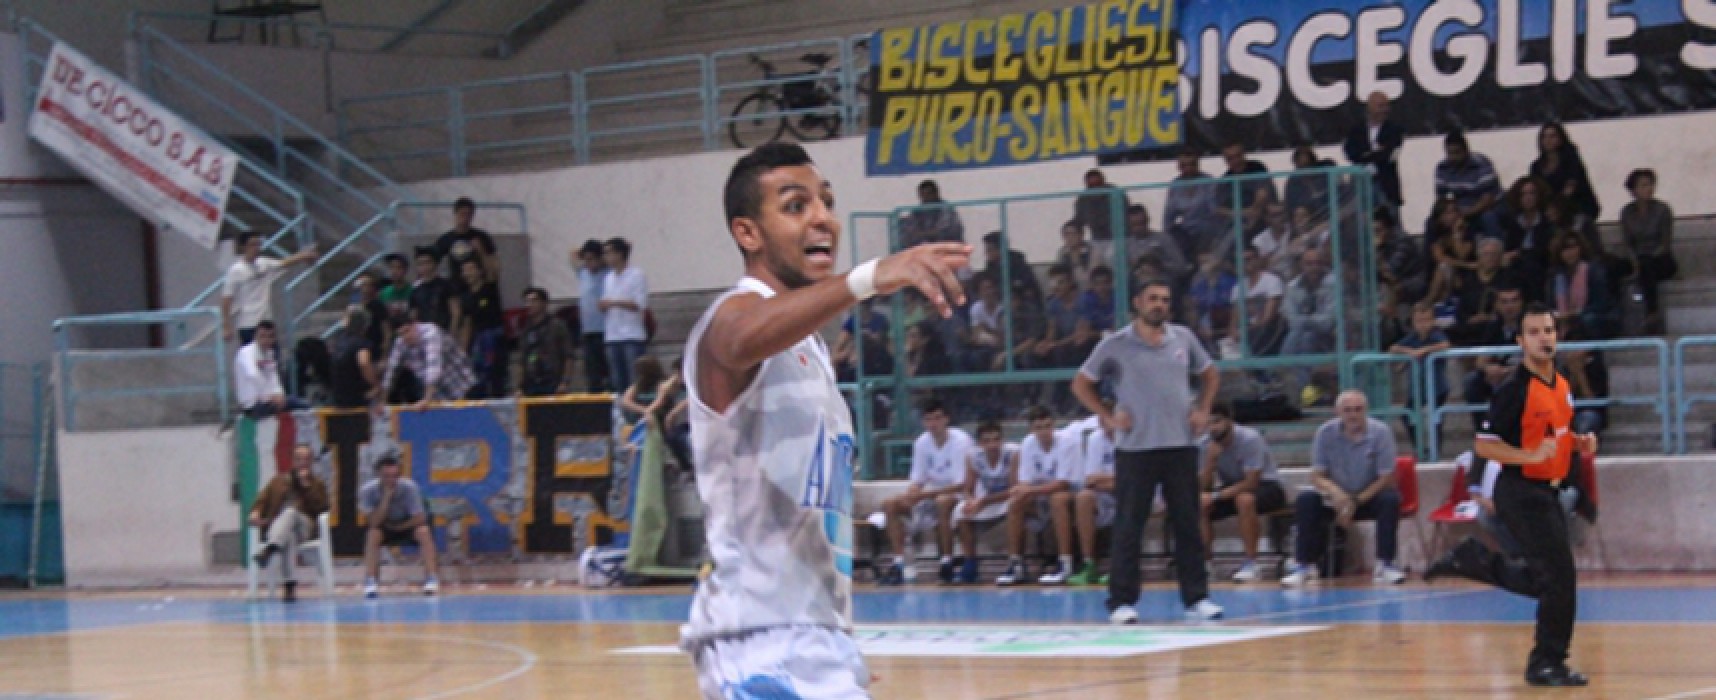 Playoff Ambrosia Basket Bisceglie, le dichiarazioni di Abassi su gara 2 contro Martina